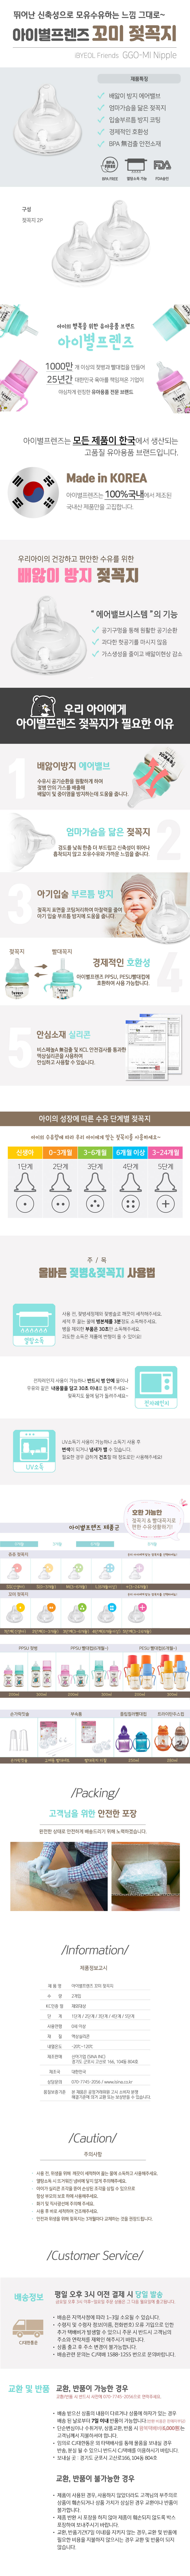 I-BYEOL Friends] GGO-MI Nipple 2pcs Step 4 (6m+)